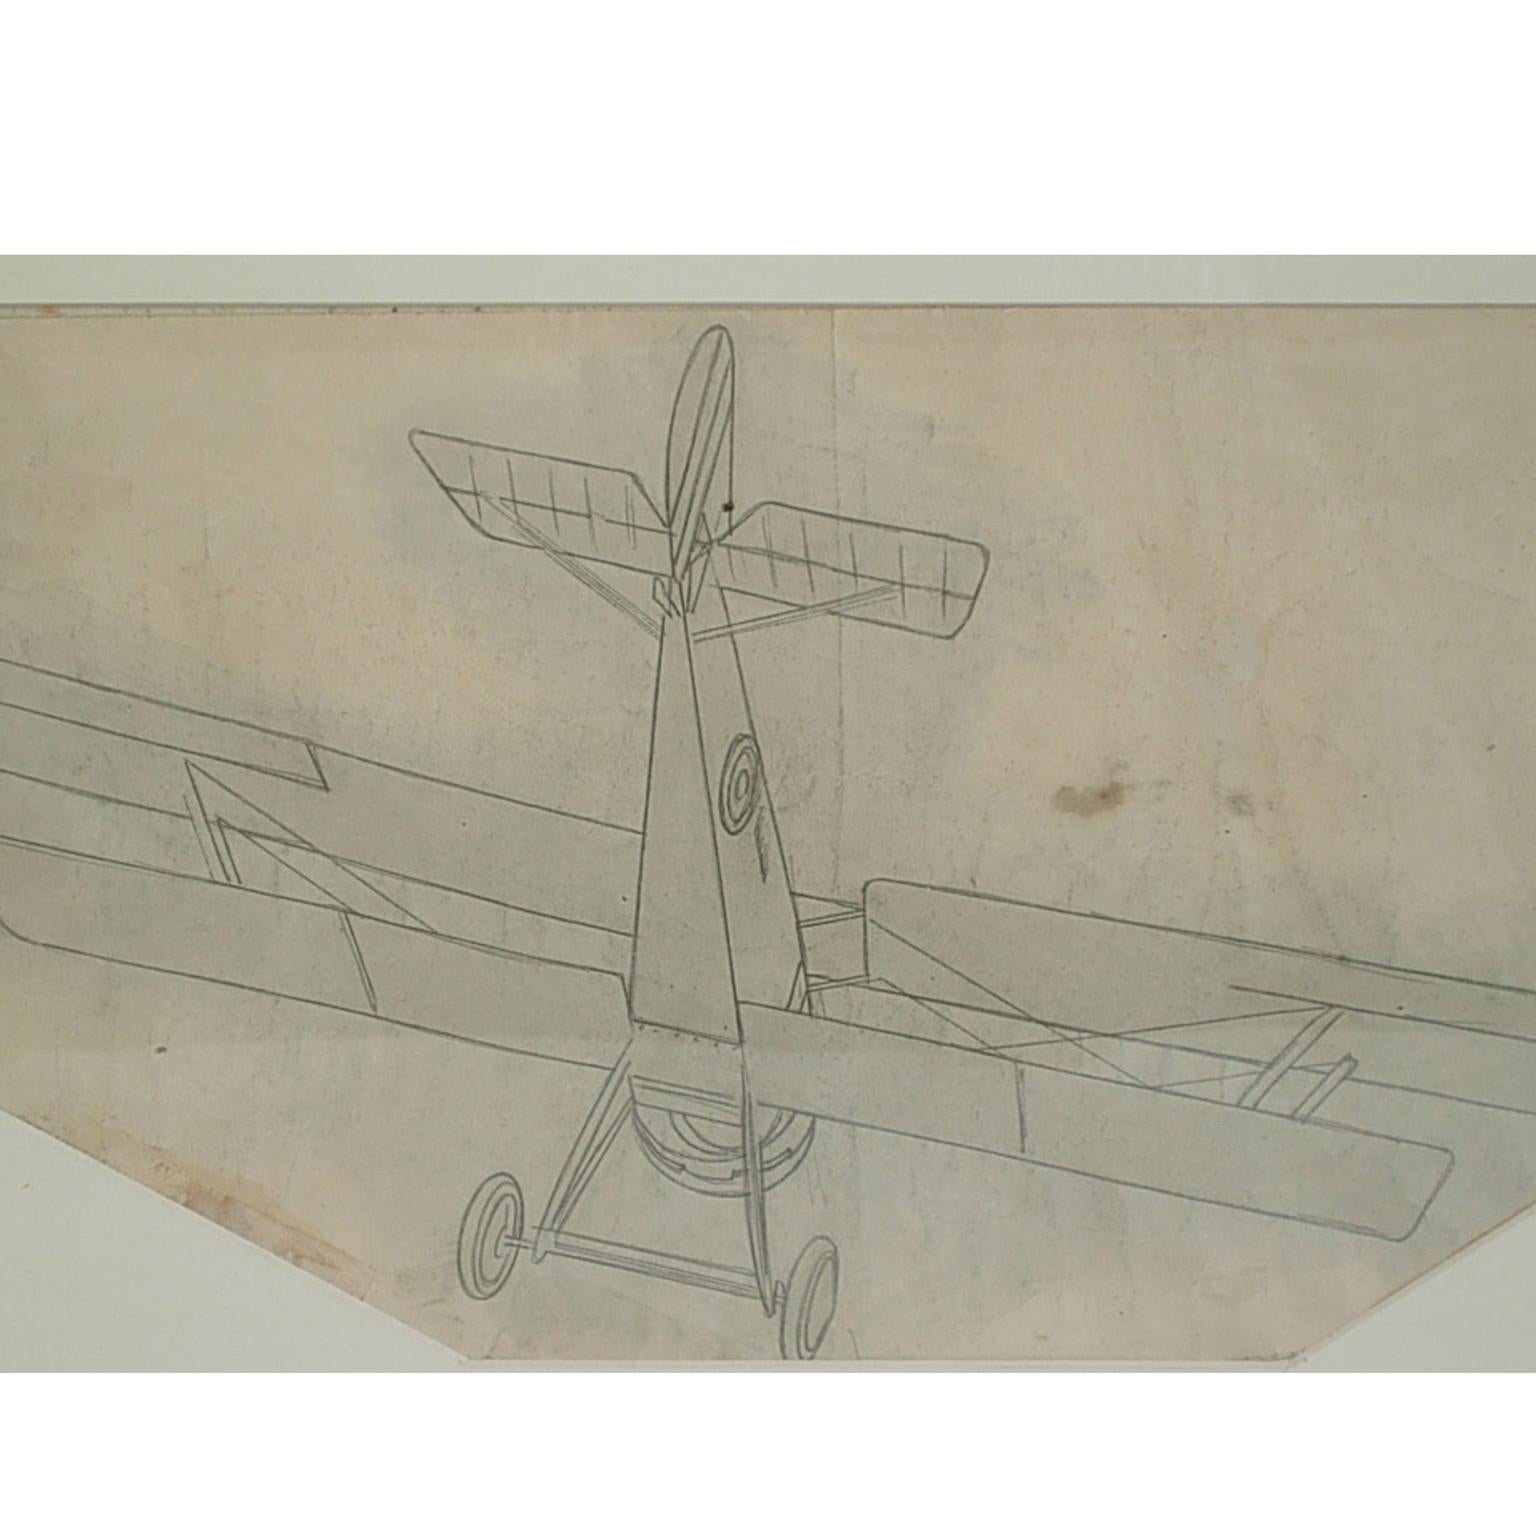 Bleistiftzeichnung eines einsitzigen Doppeldecker-Kampfflugzeugs Hanriot HD 1, von Riccardo Cavigioli. Maß mit Rahmen cm 49 x 31 - Zoll19,3 x 11,8.
Riccardo Cavigioli wurde am 10. November 1895 in Mailand geboren und starb am 27. Mai 1975 in